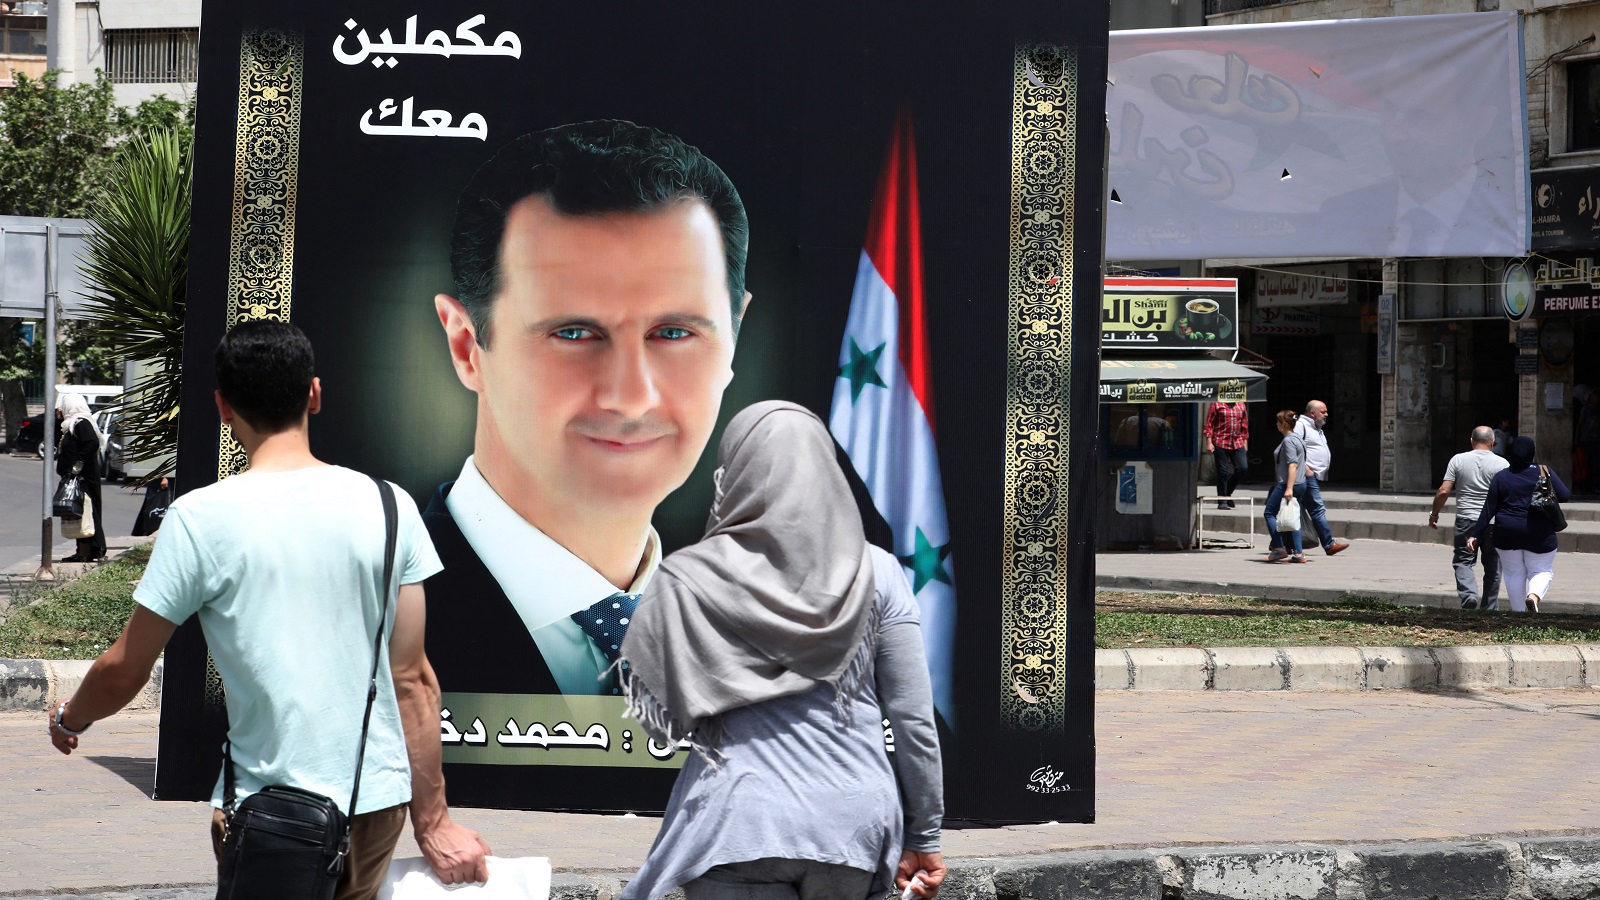 "الأمل بالعمل"..شعار الأسد الانتخابي الذي يتجاهل "انتصاراته"